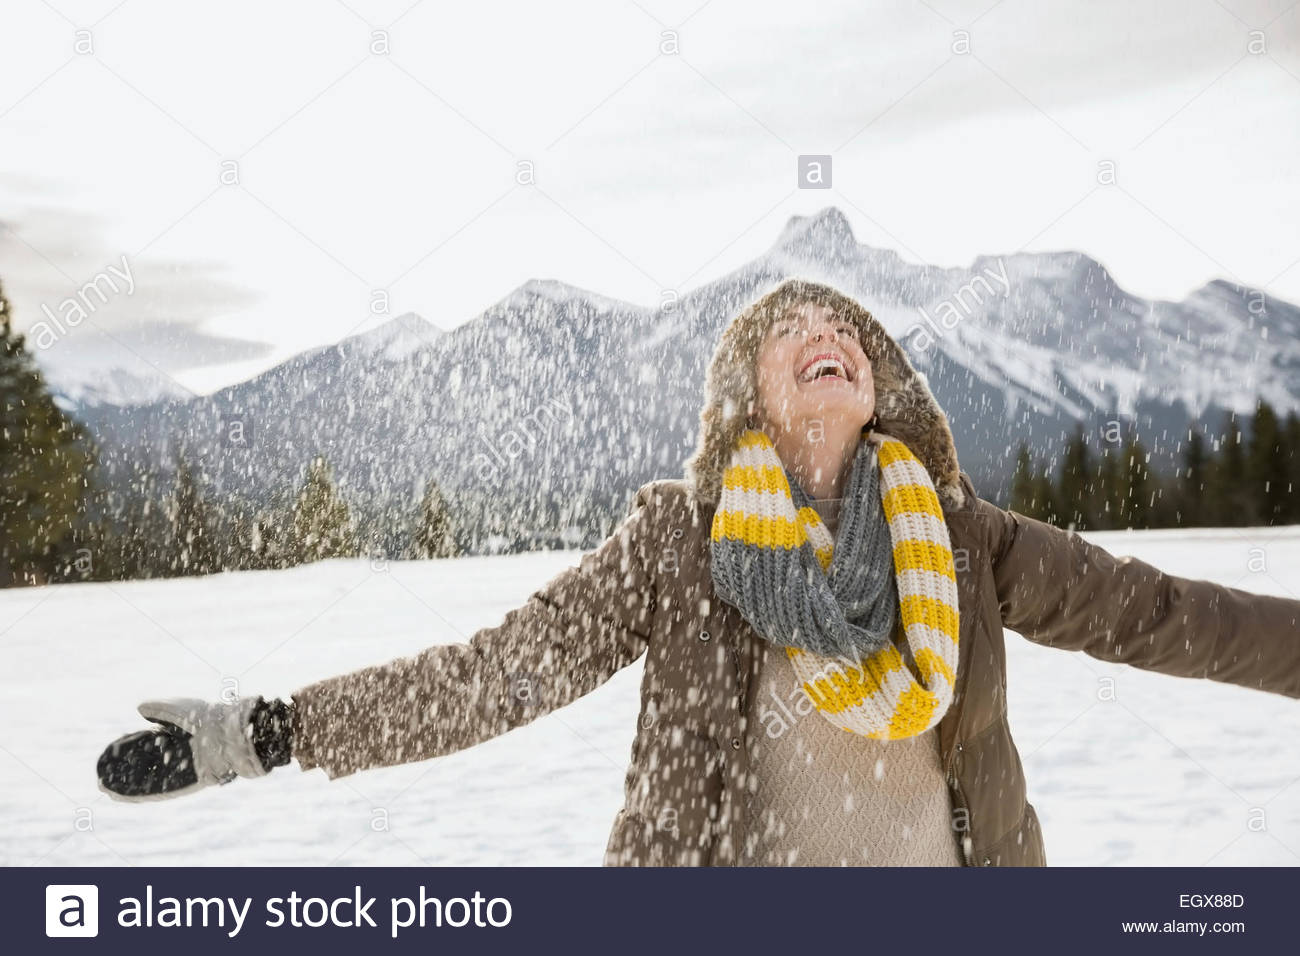 La nieve caída en torno a una exuberante mujer con los brazos extendidos Foto de stock